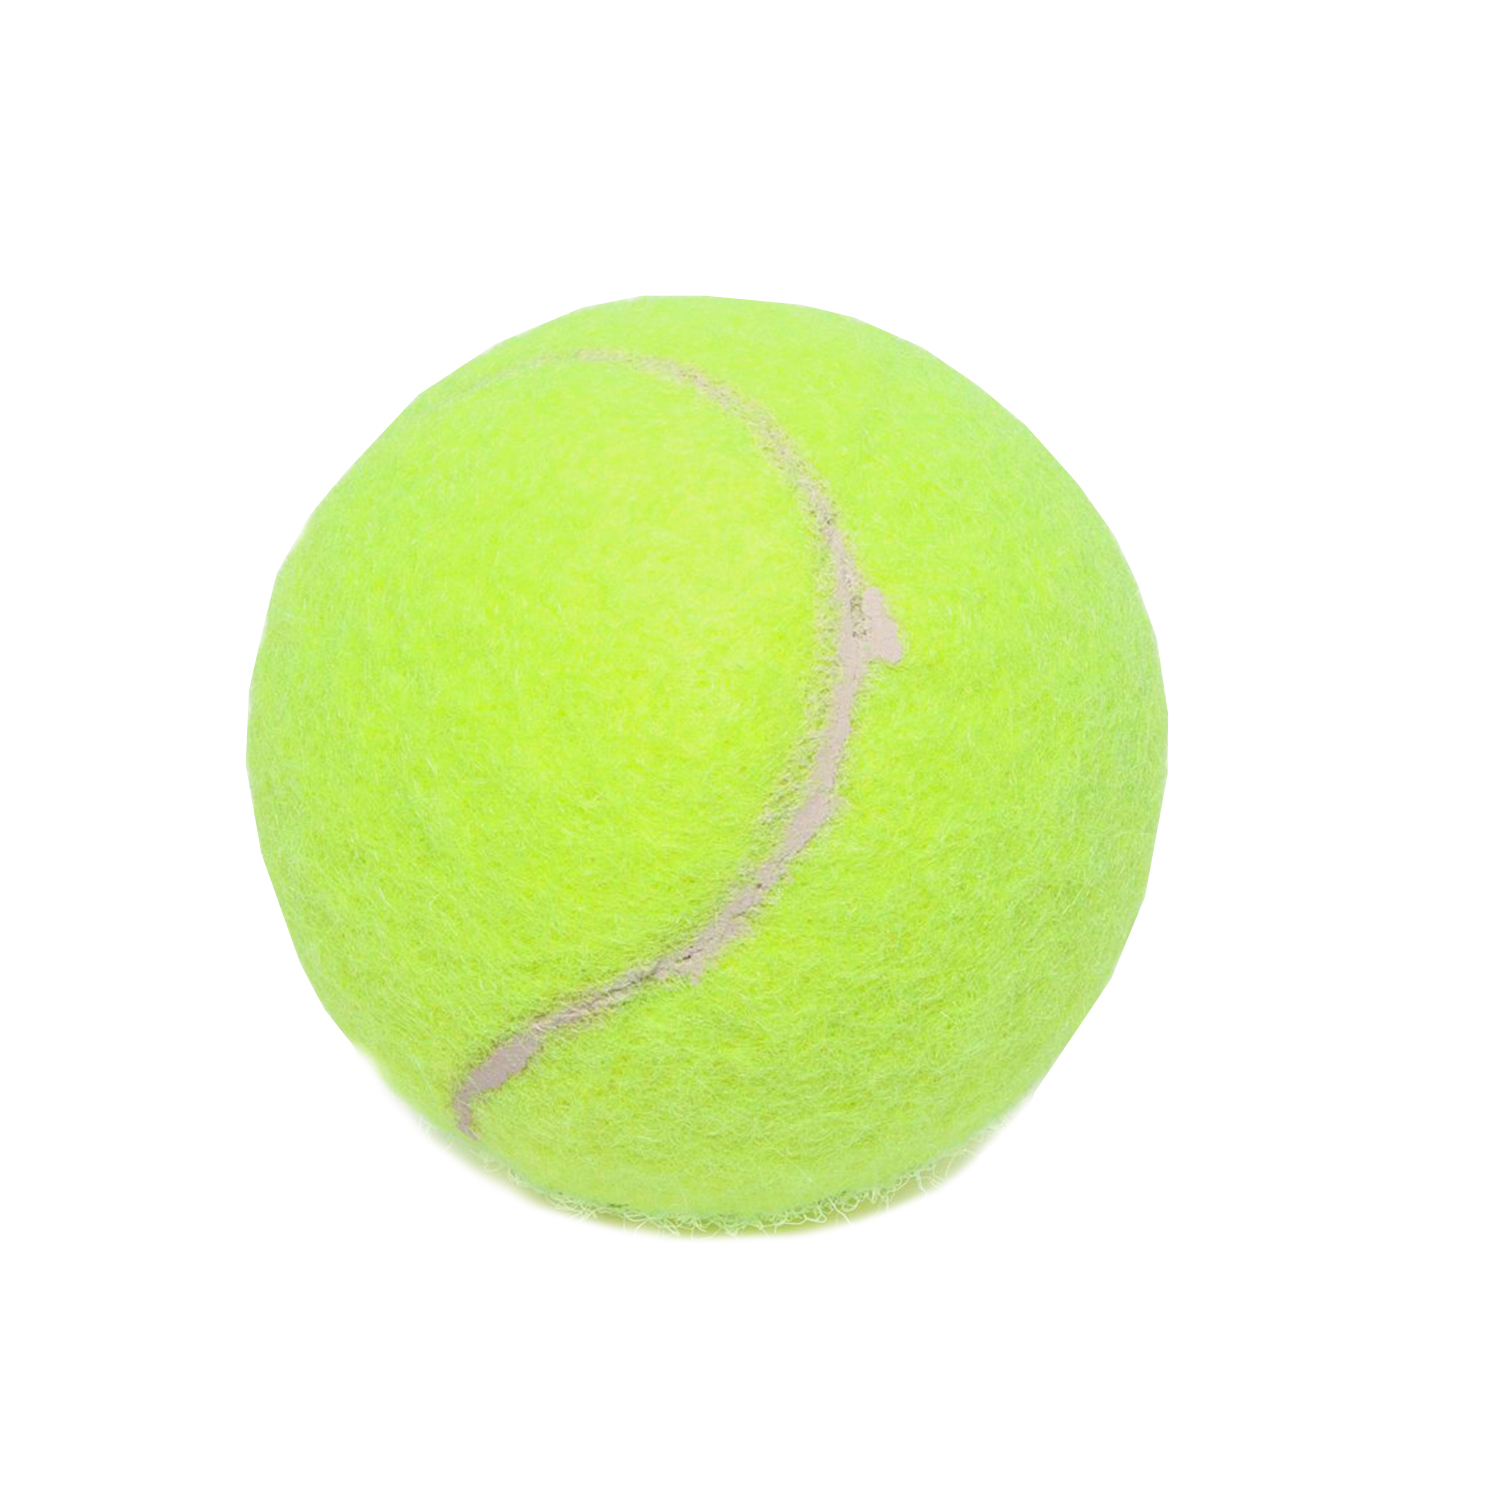 Мяч для большого тенниса "909"